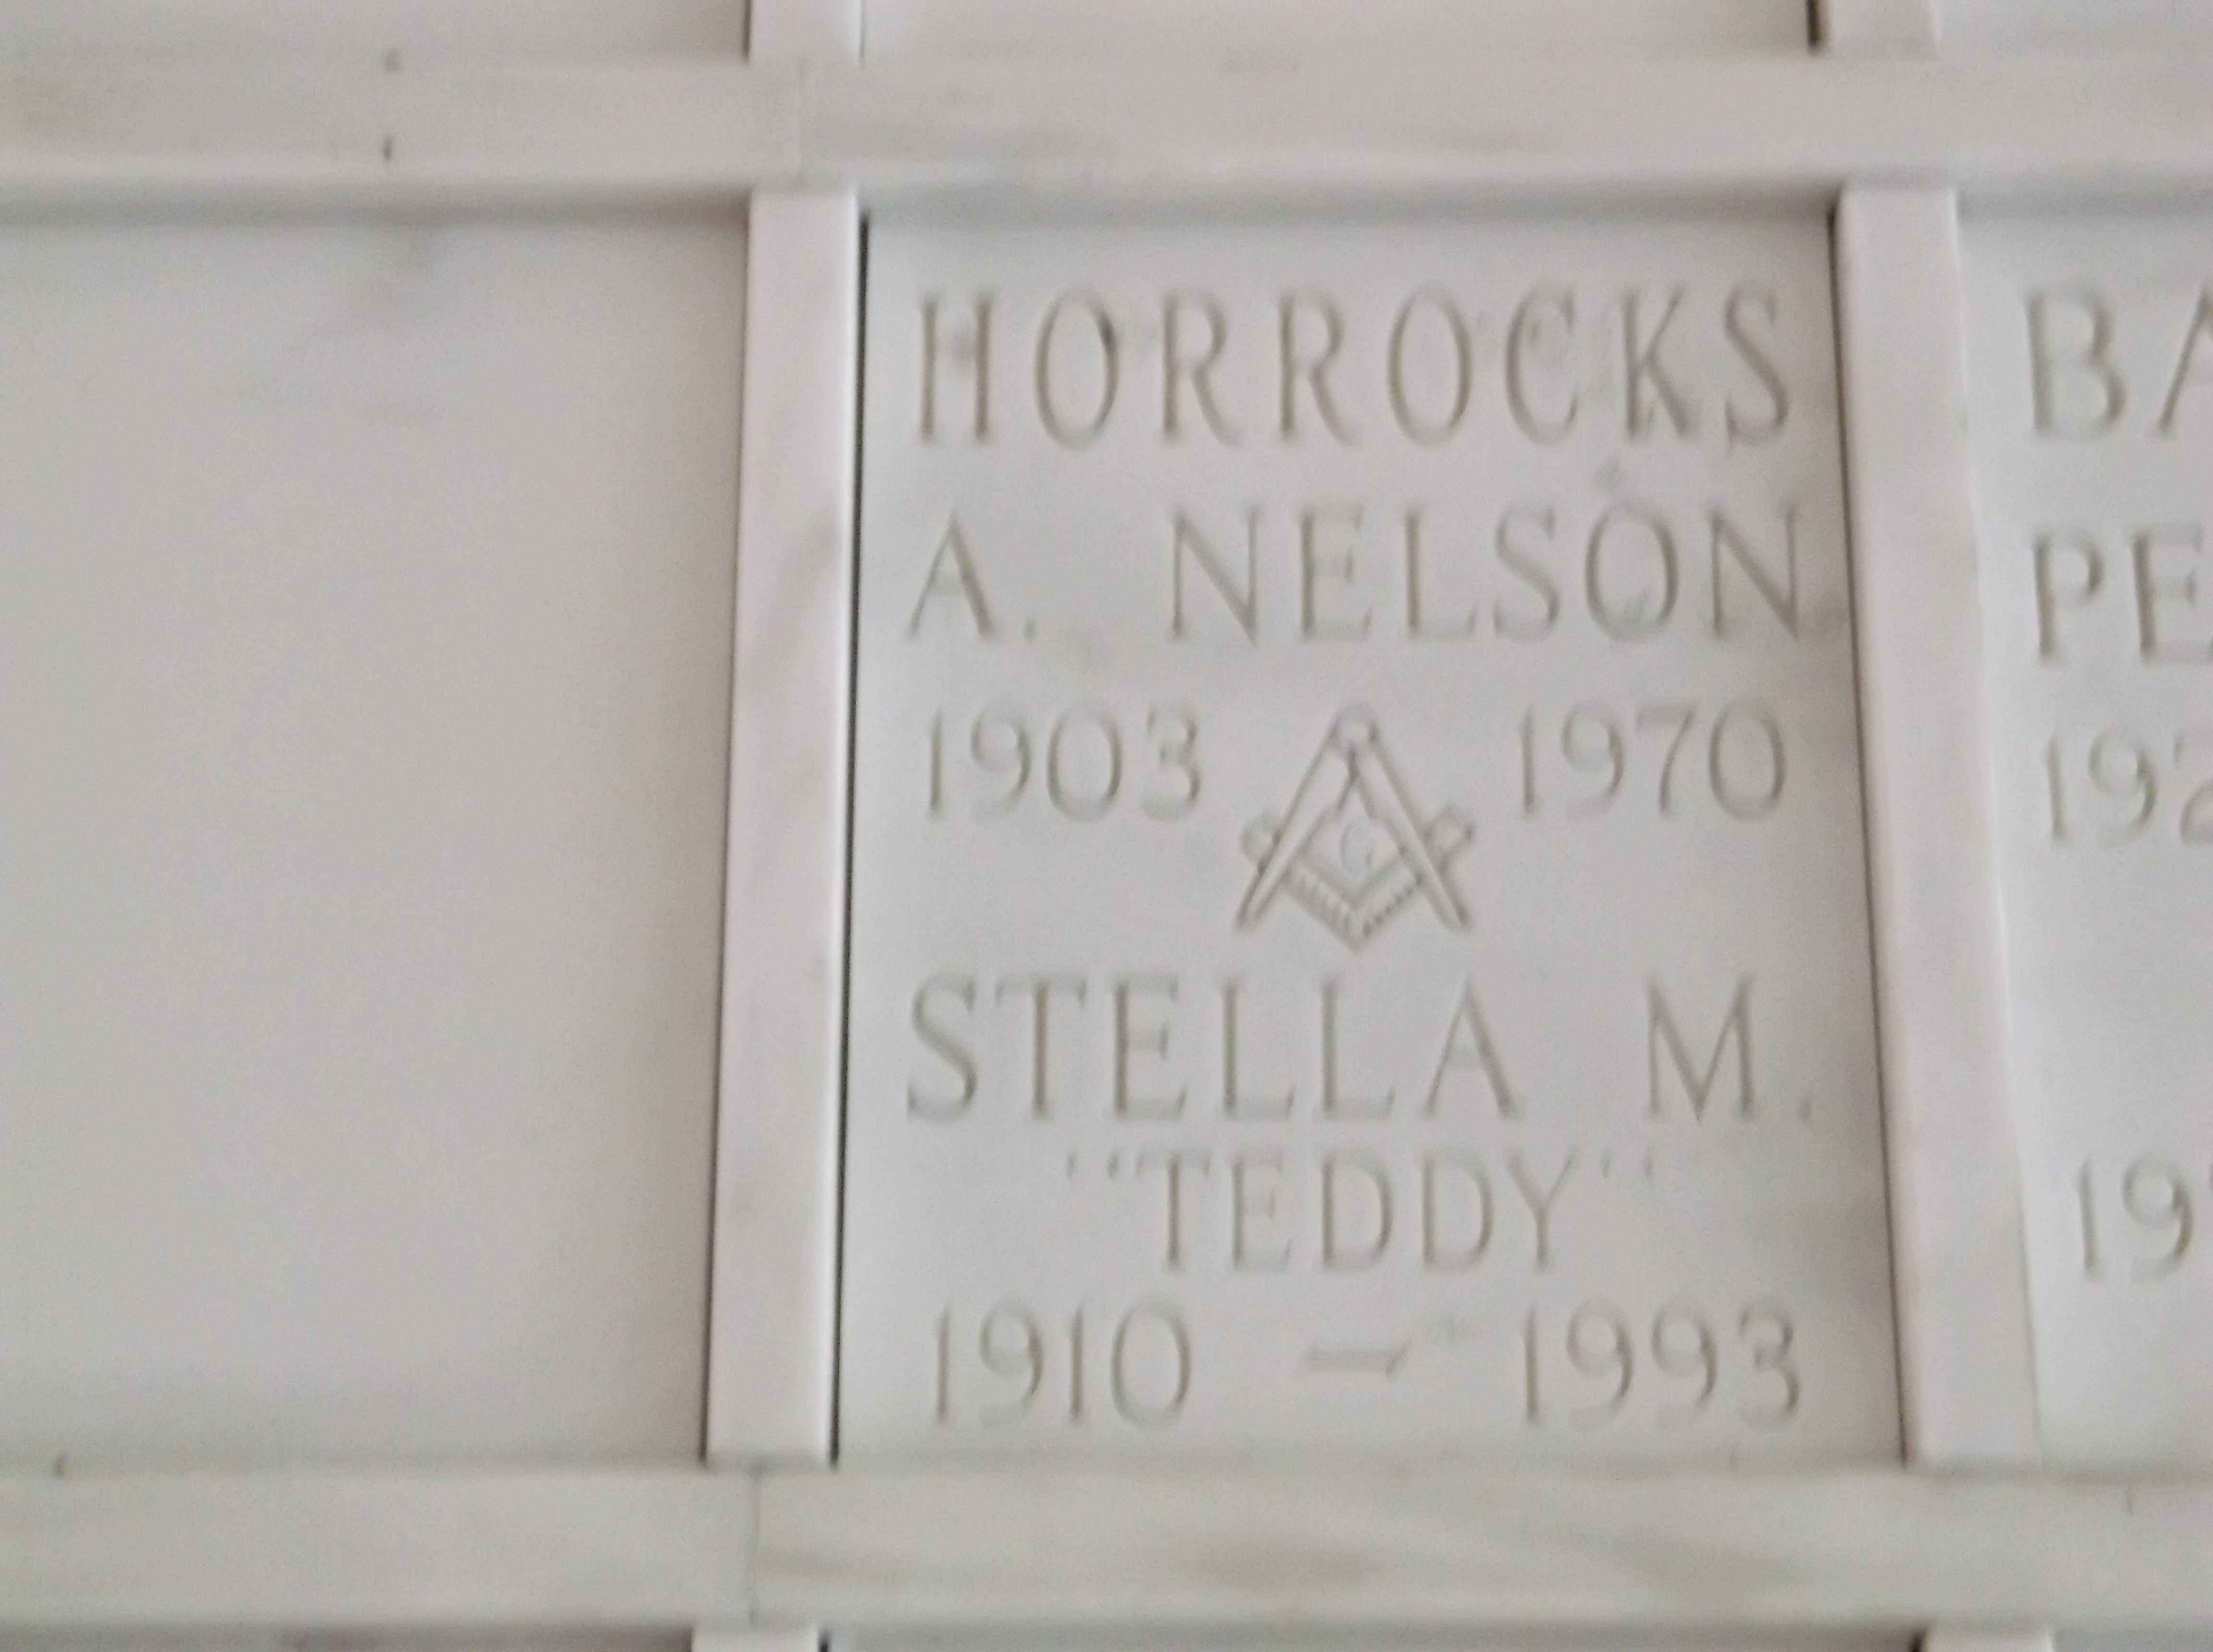 Stella M "Teddy" Horrocks